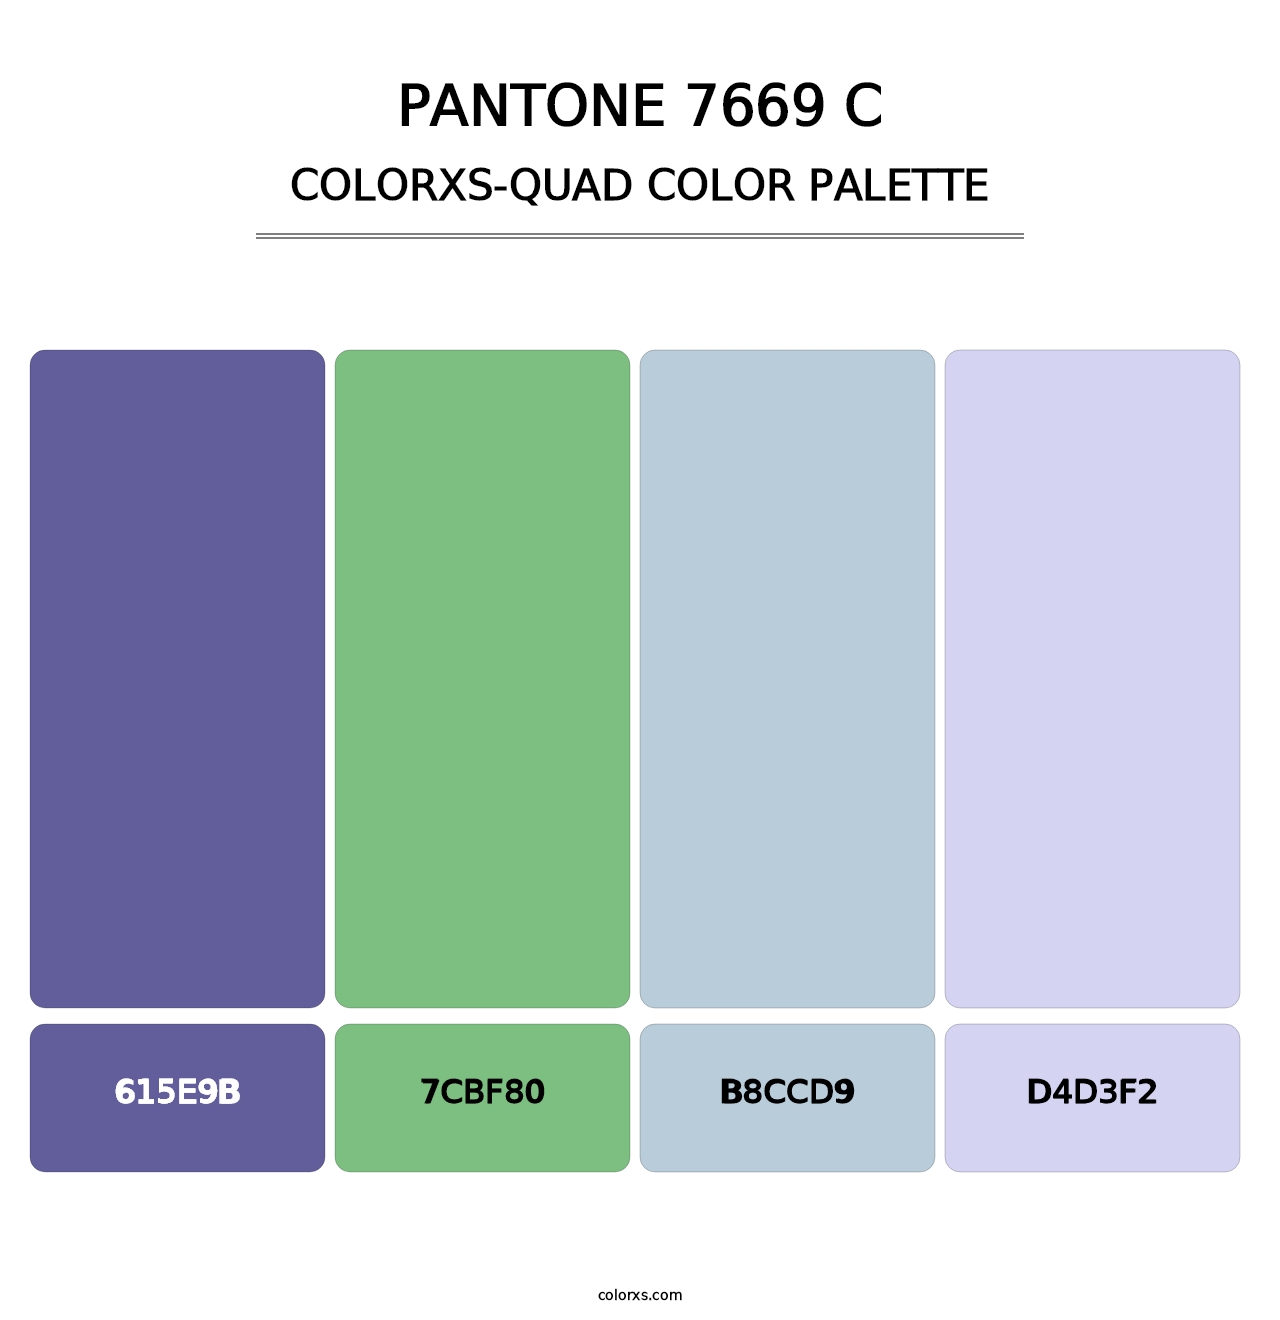 PANTONE 7669 C - Colorxs Quad Palette